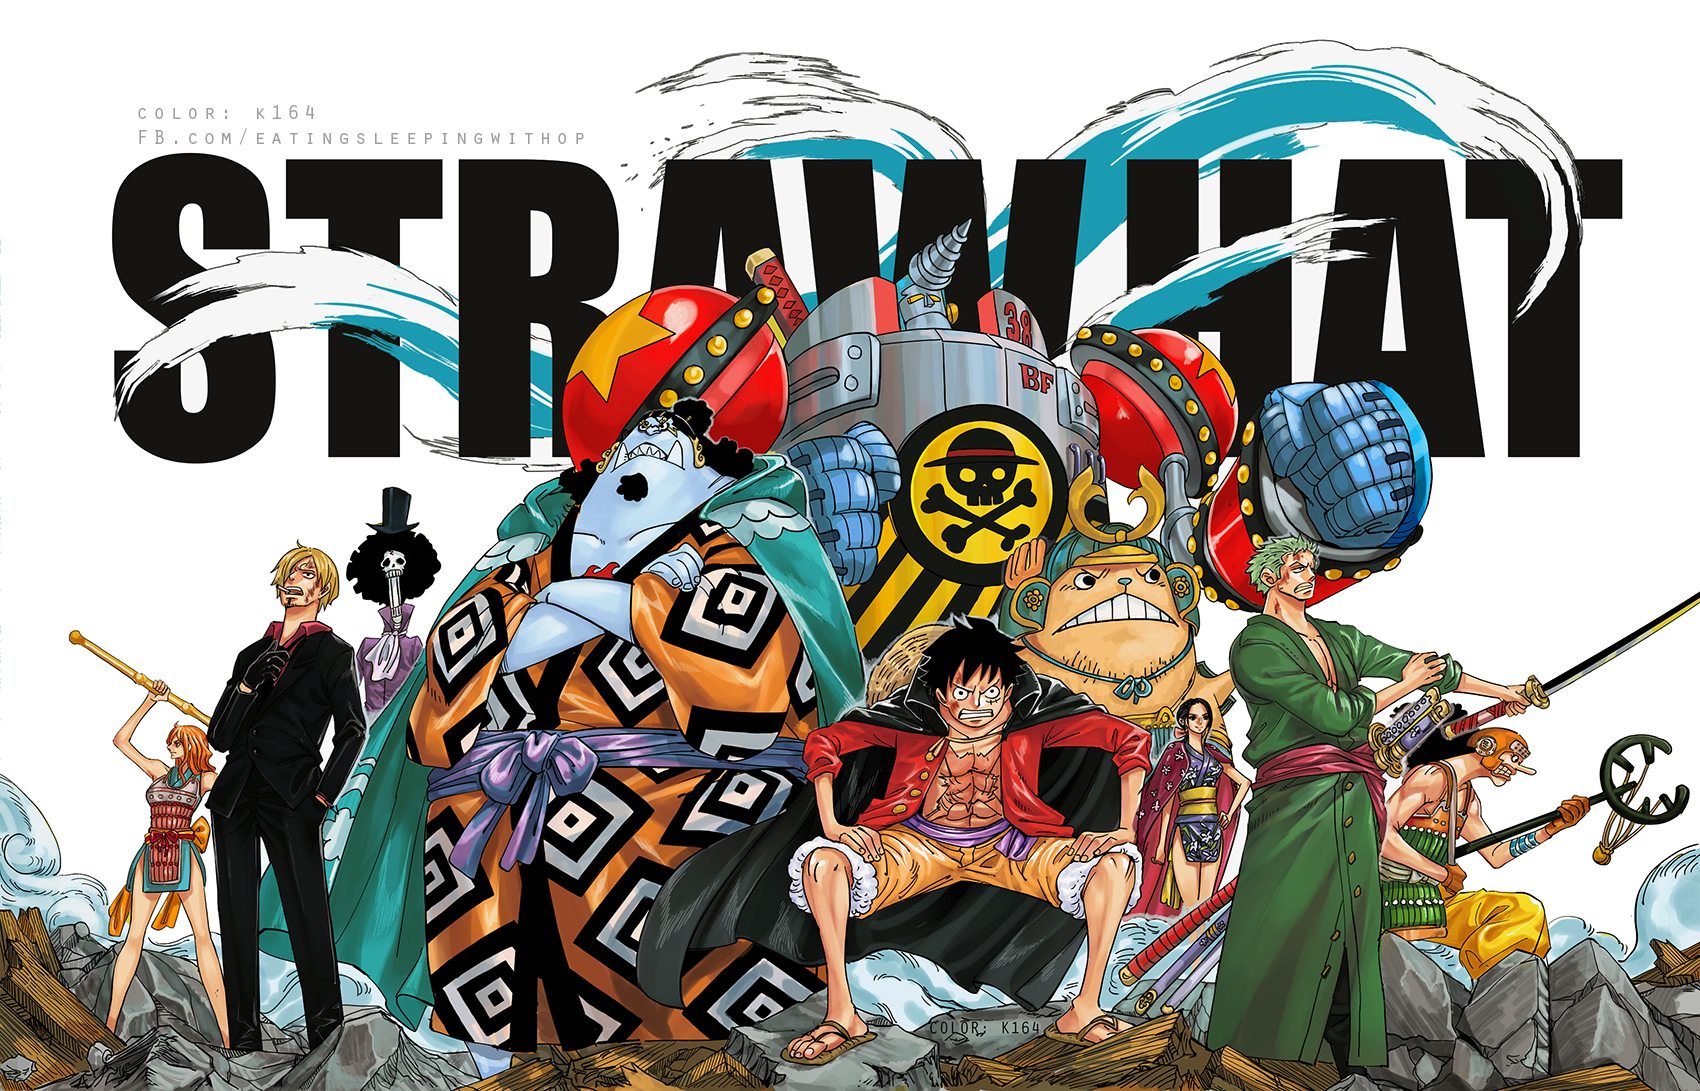 Gửi tới các fan One Piece, ngay bây giờ hãy thưởng thức bộ sưu tập ảnh băng luffy với đủ các trang phục và khuôn mặt khác nhau đầy sáng tạo. Luffy trong trang phục Samurai hay chiến tranh tối thượng đều đầy cuồng nhiệt và dũng cảm.